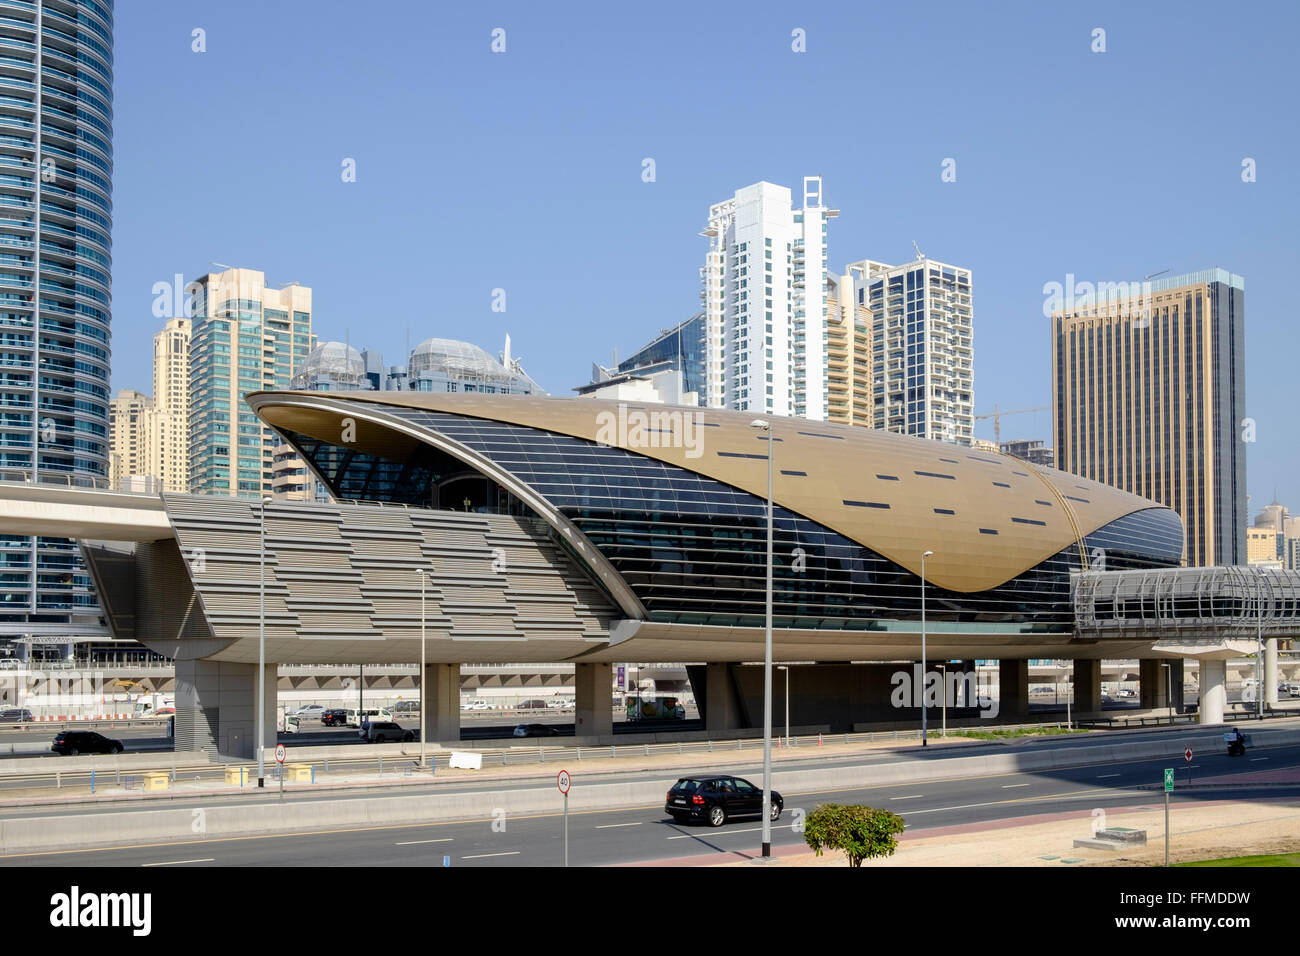 La station de métro aérien moderne pour système de métro de Dubaï en Émirats Arabes Unis Banque D'Images